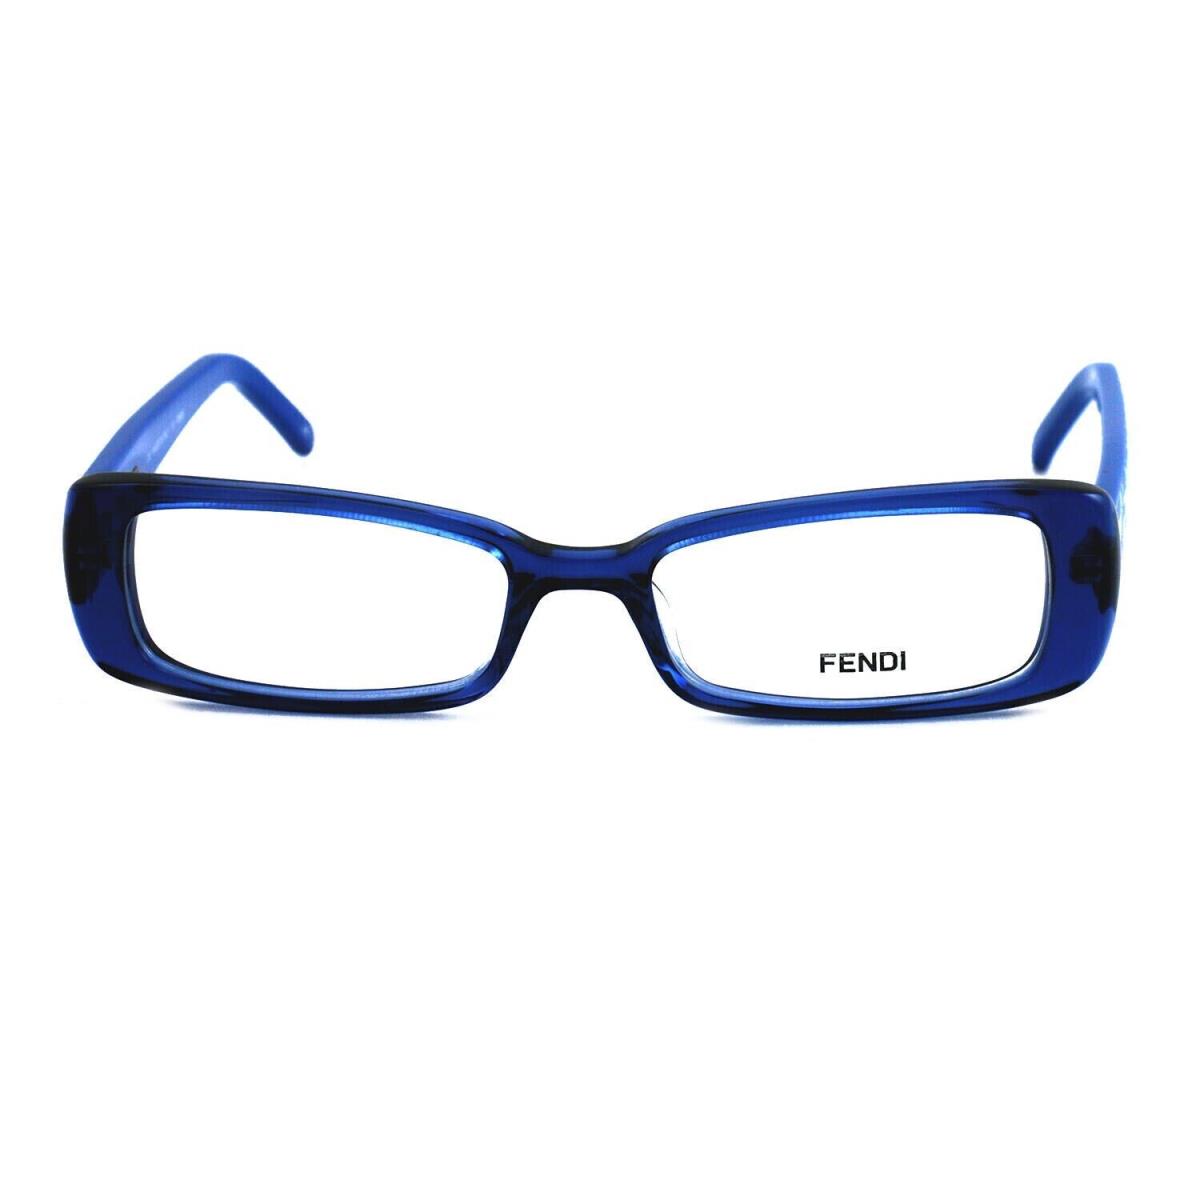 Fendi Women`s FF906 442 Blue Rectangular Eyeglasses Frames 49 x 16 x 135